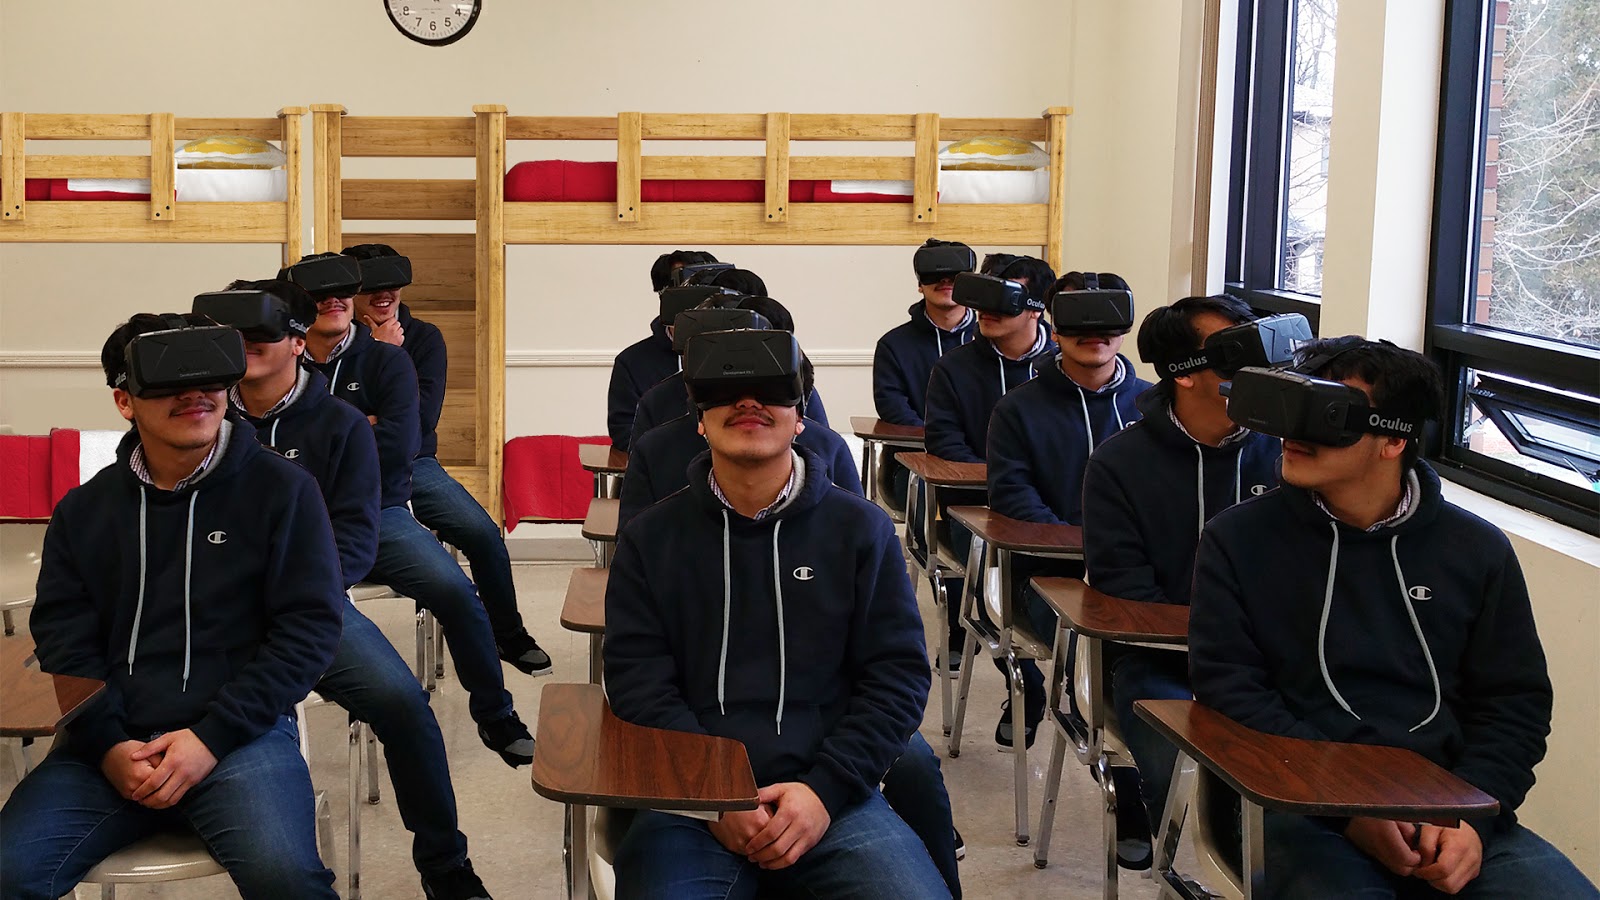 Xuất hiện ngôi trường đầu tiên tại Nhật Bản mở lớp dạy công nghệ VR